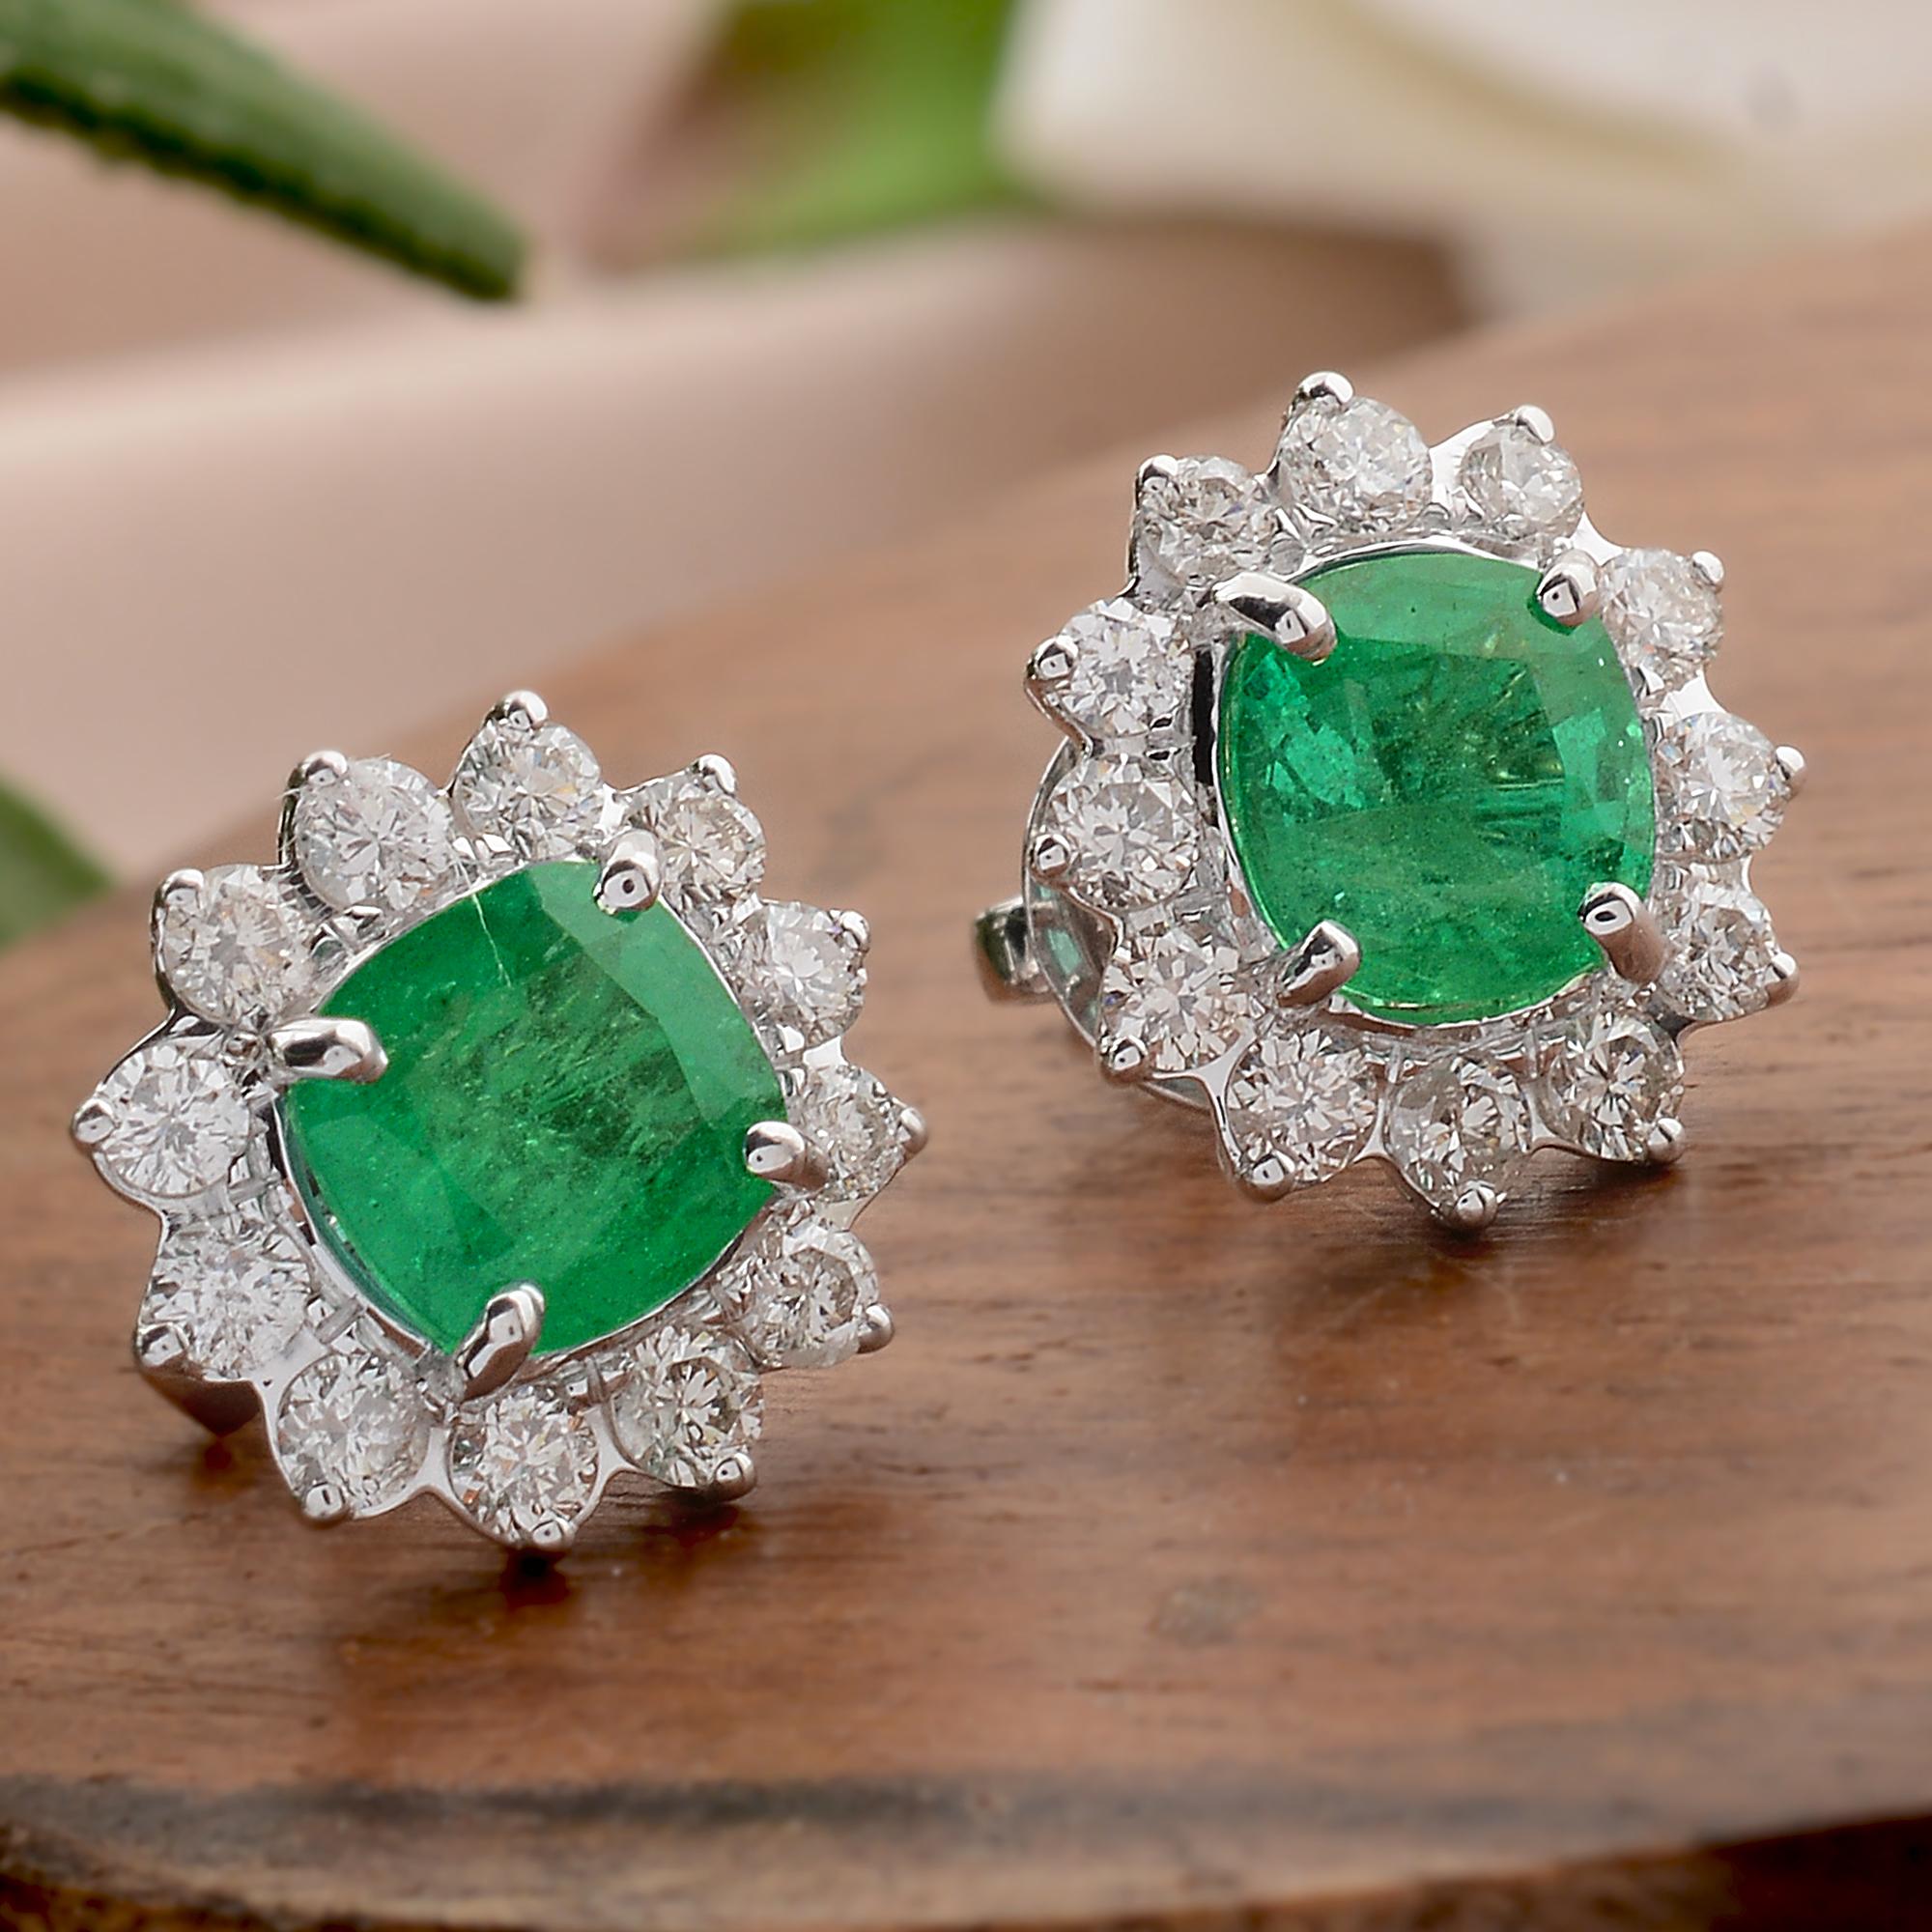 Modern Zambian Emerald Gemstone Stud Earrings Diamond 14 Karat White Gold Fine Jewelry For Sale